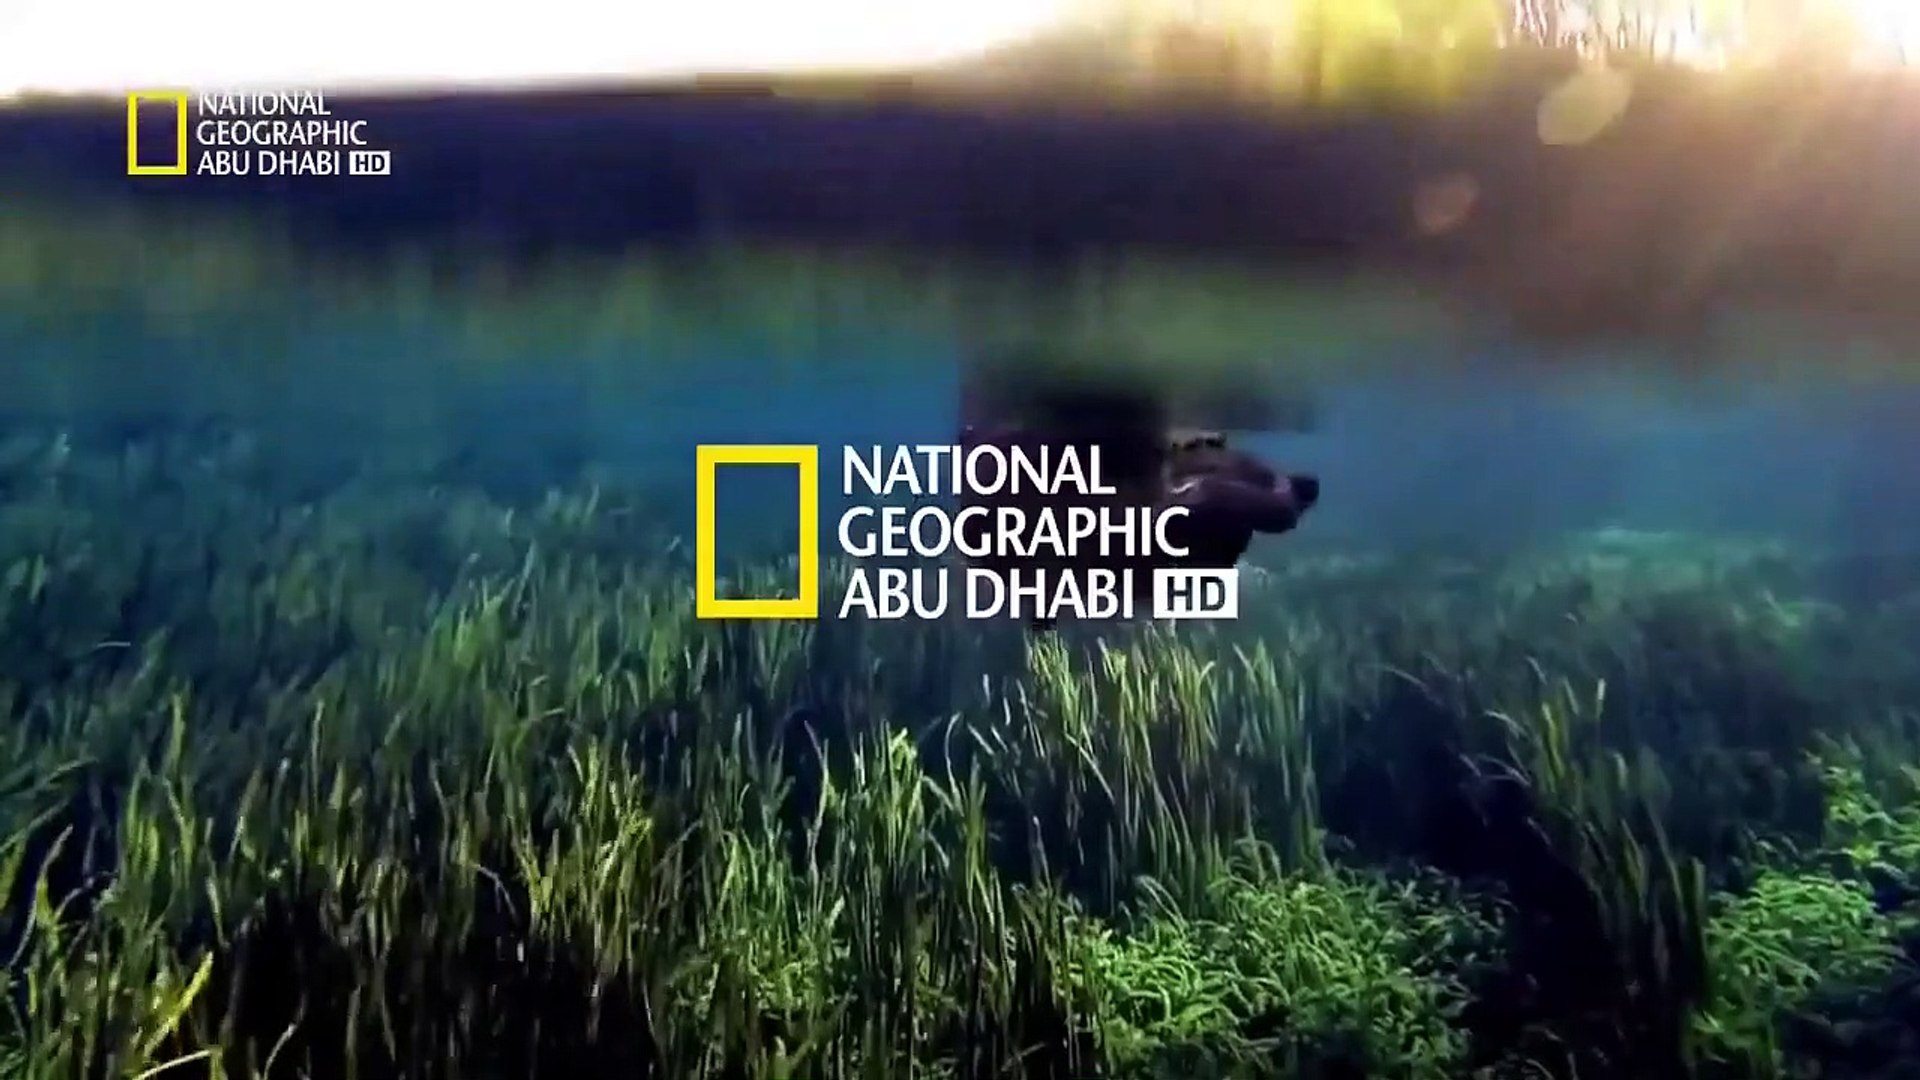 تردد قناة ناشيونال جيوغرافيك على نايل سات لمشاهدة برامج المغامرة والثقافة